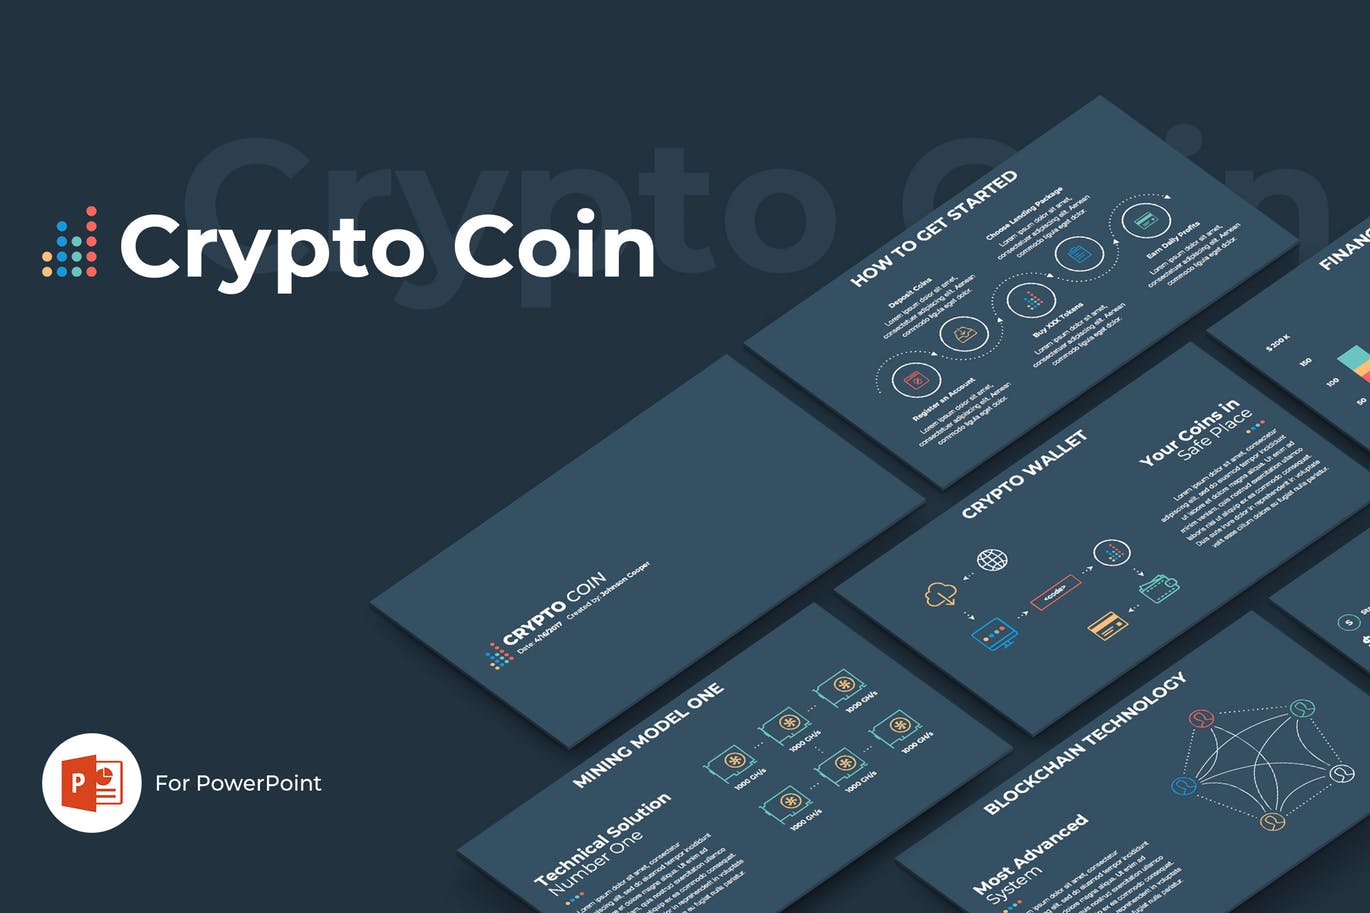 加密货币/区块链主题演讲第一素材精选PPT模板 Crypto Coin PowerPoint Template插图